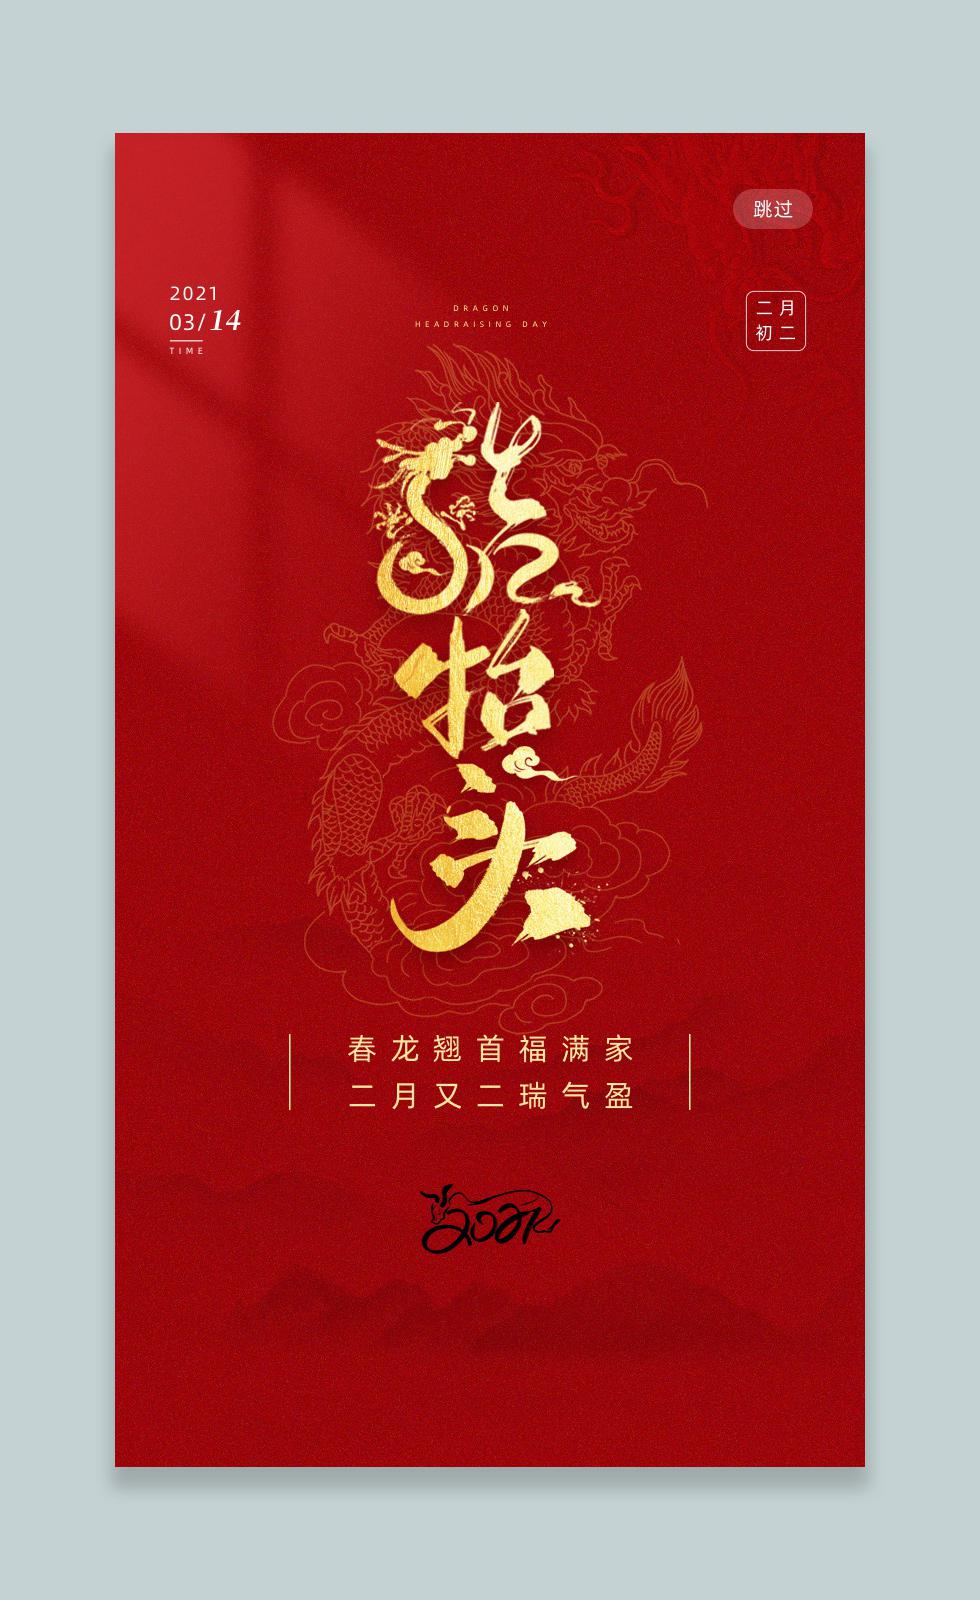 深红色大气简洁龙抬头中国传统节日手机海报h5海报设计二月二龙抬头.JPG